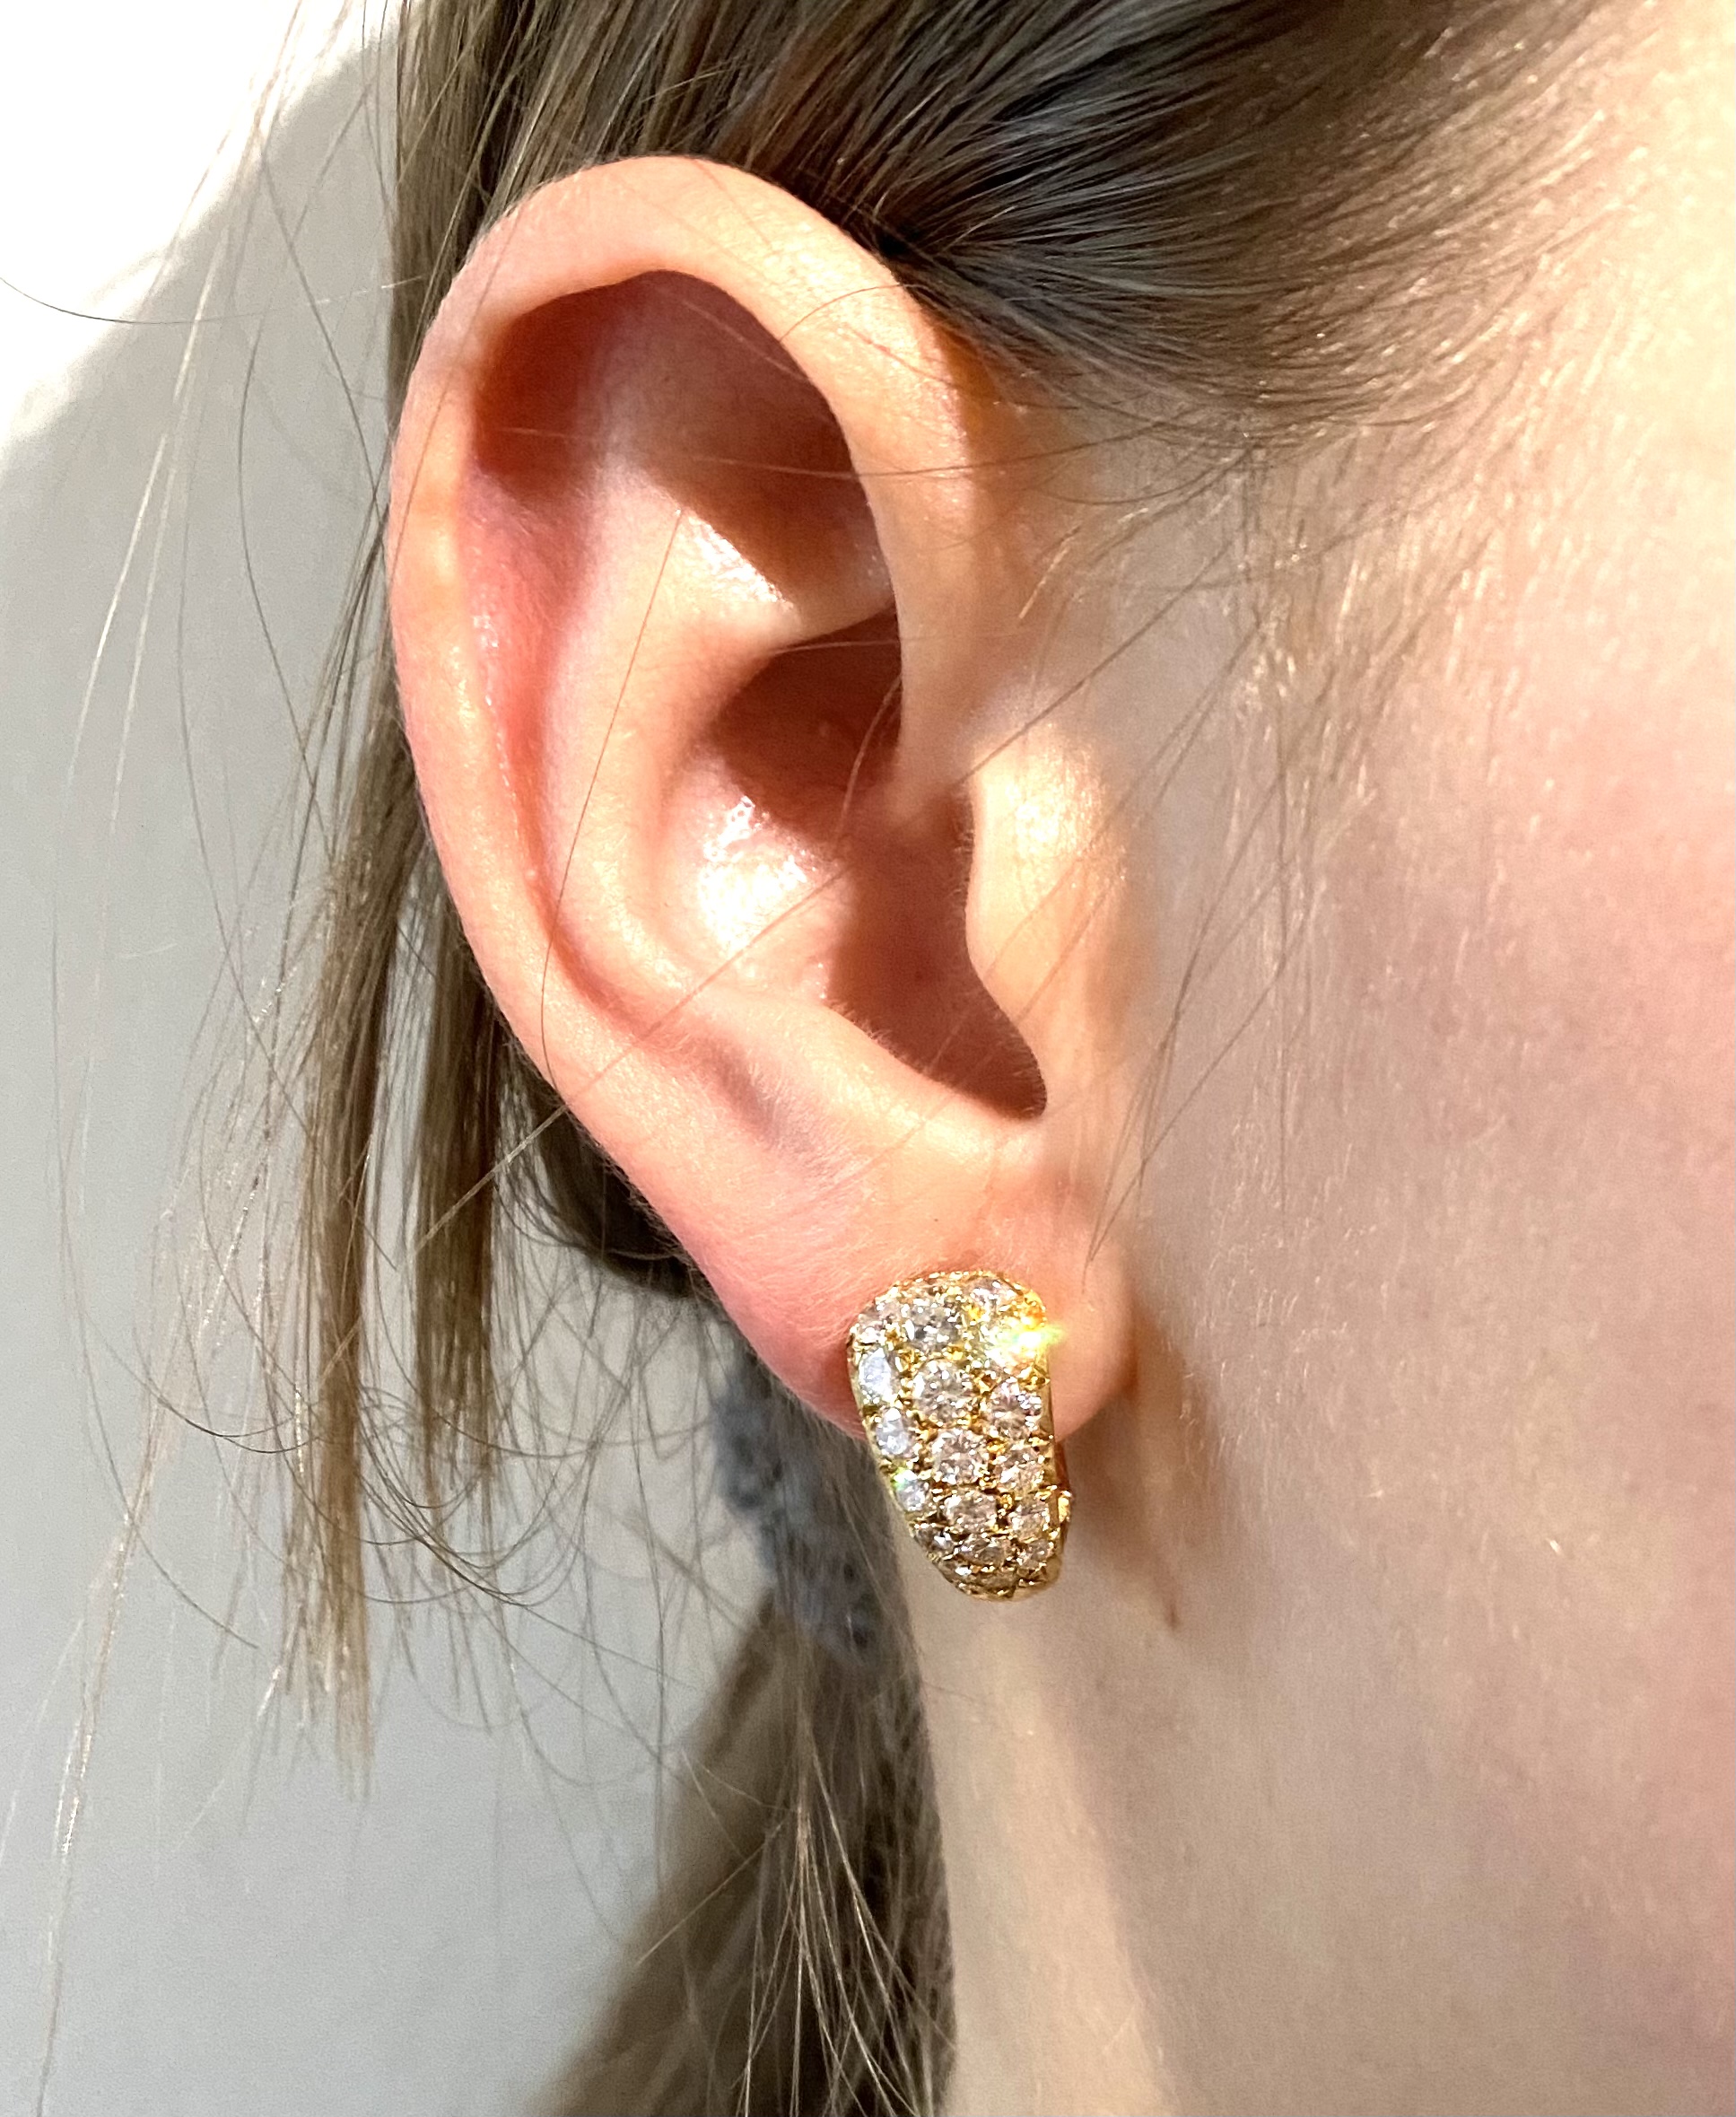 Boucles d’oreilles Van Cleef & Arpels (signées et numérotées)  diamants (2 carats) vers 1960, poinçon : A. Vassort-3